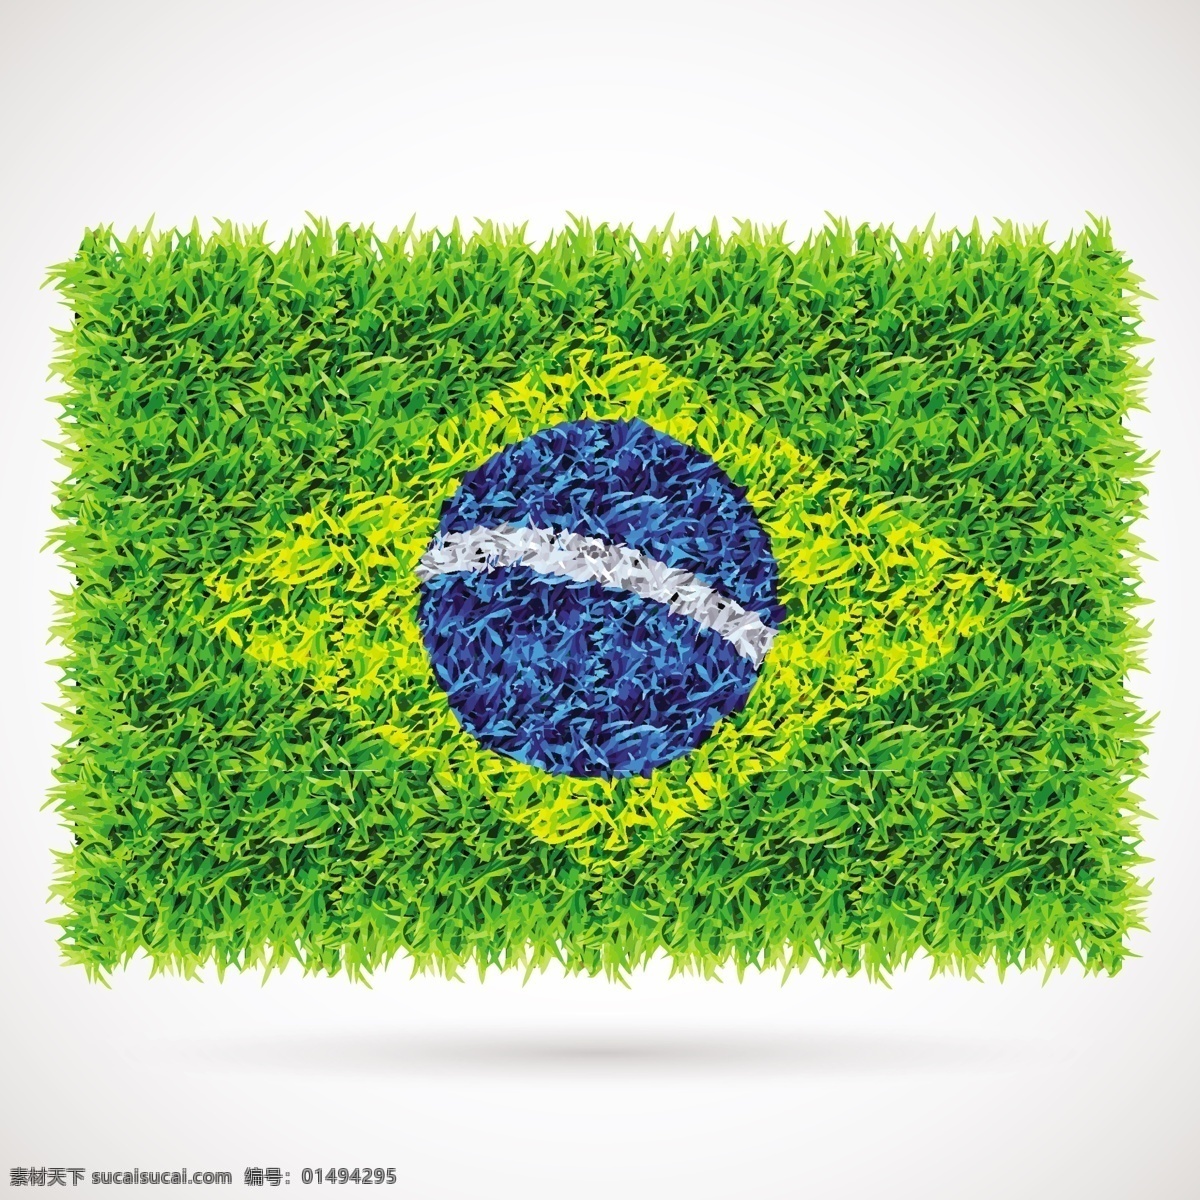 草坪 世界杯 标志 背景 模板下载 足球 巴西 体育运动 生活百科 矢量素材 白色